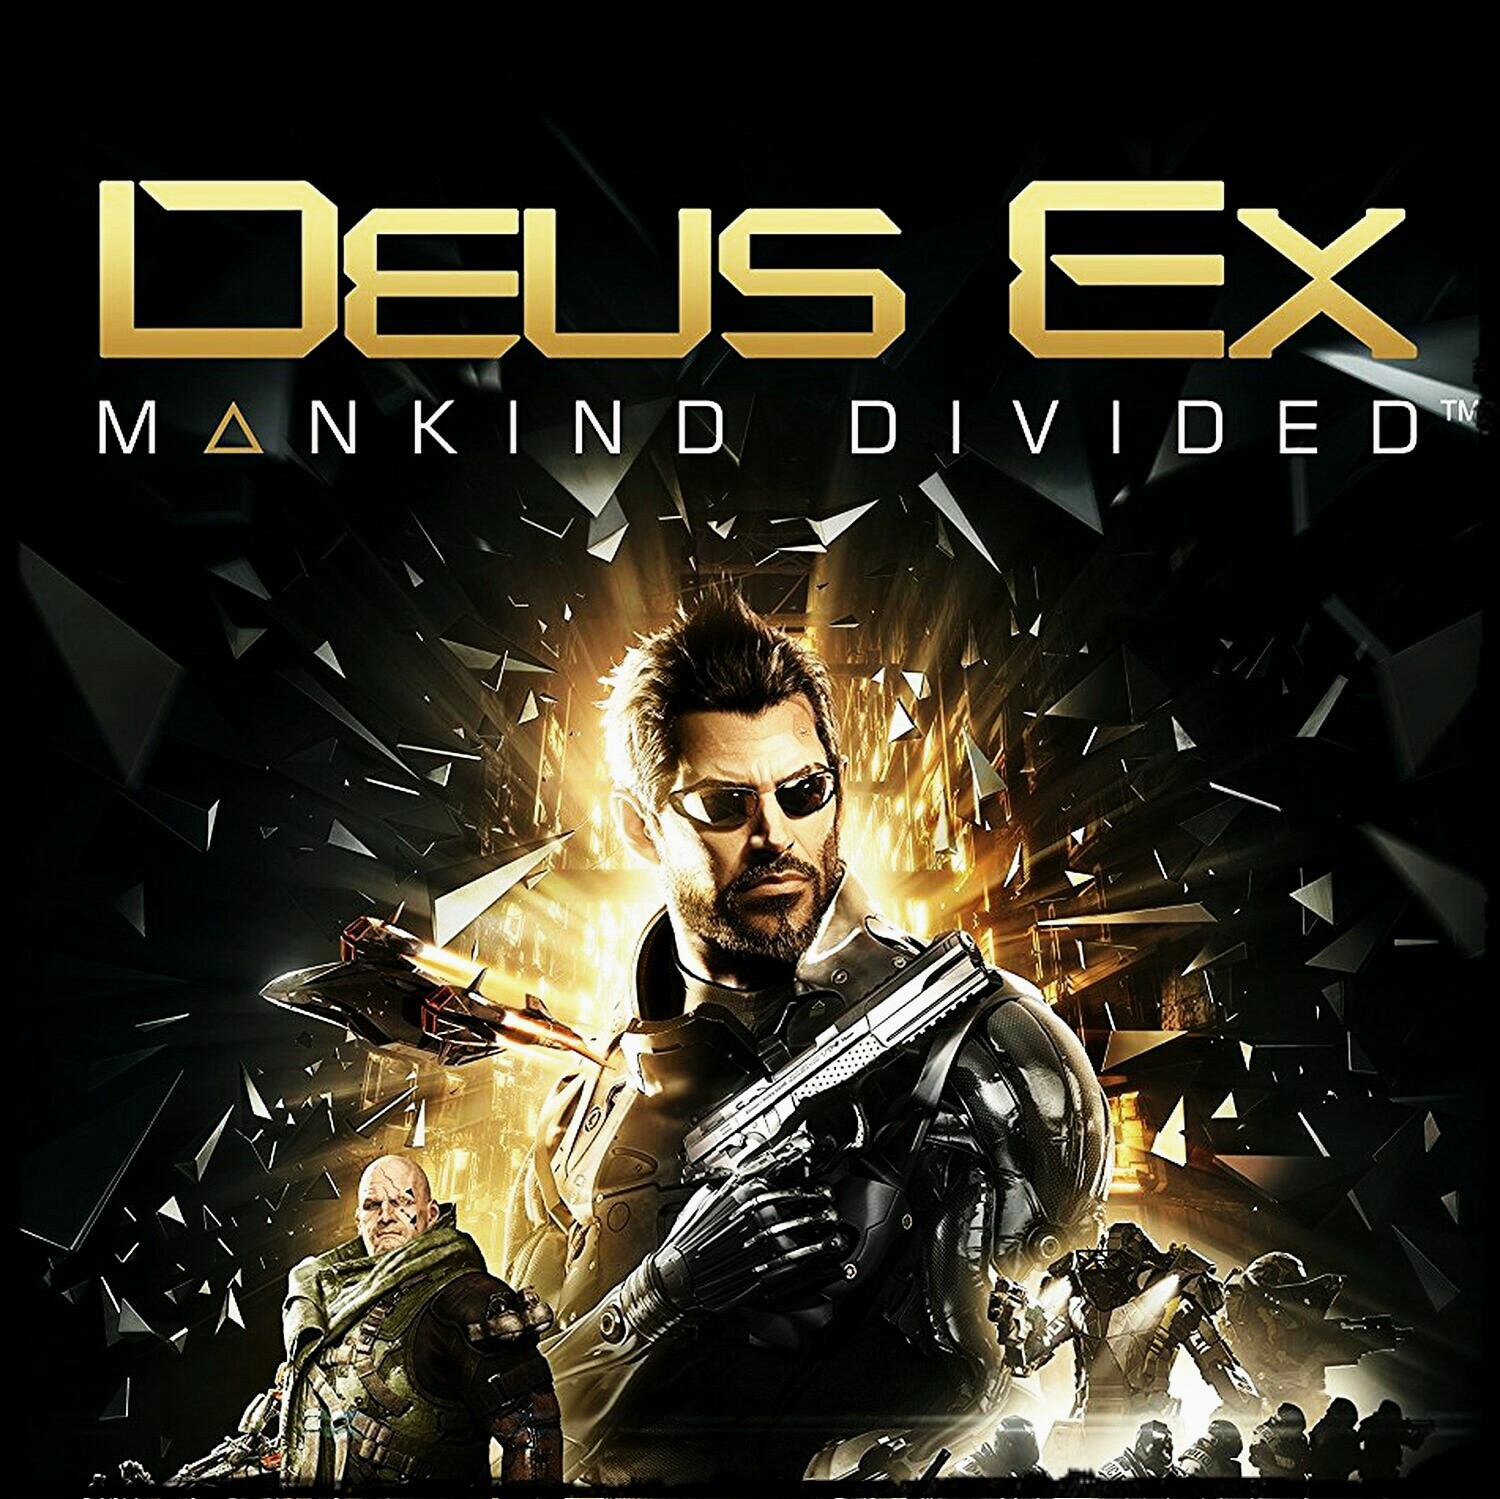 Deus ex mankind divided epic games. Deus ex игра. Deus ex: Mankind divided. Deus ex: Mankind divided [ps4]. Deus ex: Mankind divided - Digital Deluxe Edition.